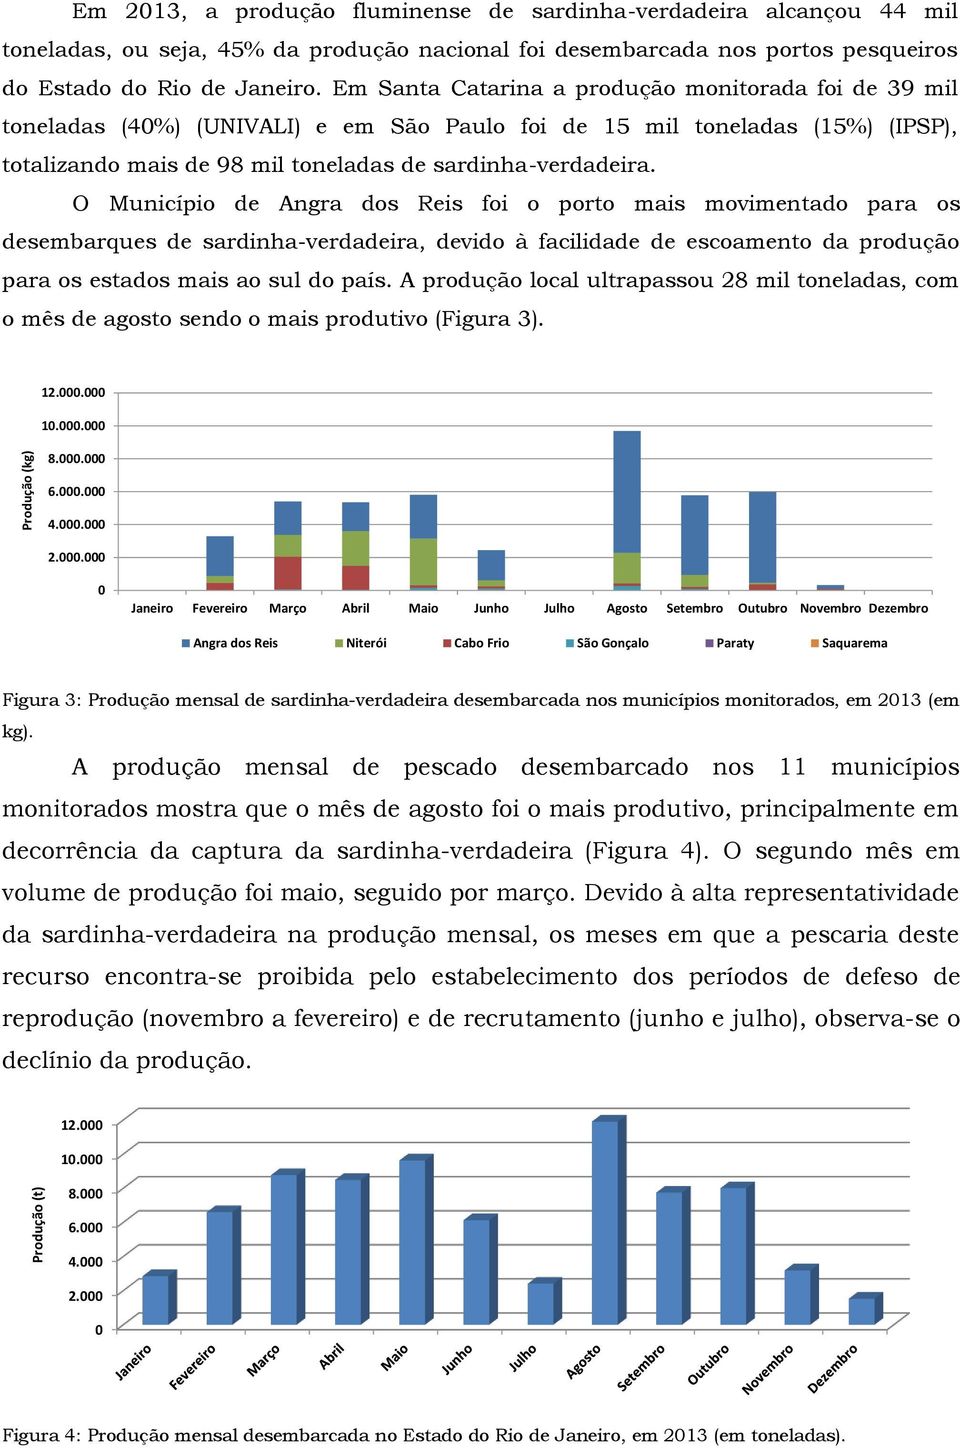 Em Santa Catarina a produção monitorada foi de 39 mil toneladas (40%) (UNIVALI) e em São Paulo foi de 15 mil toneladas (15%) (IPSP), totalizando mais de 98 mil toneladas de sardinha-verdadeira.